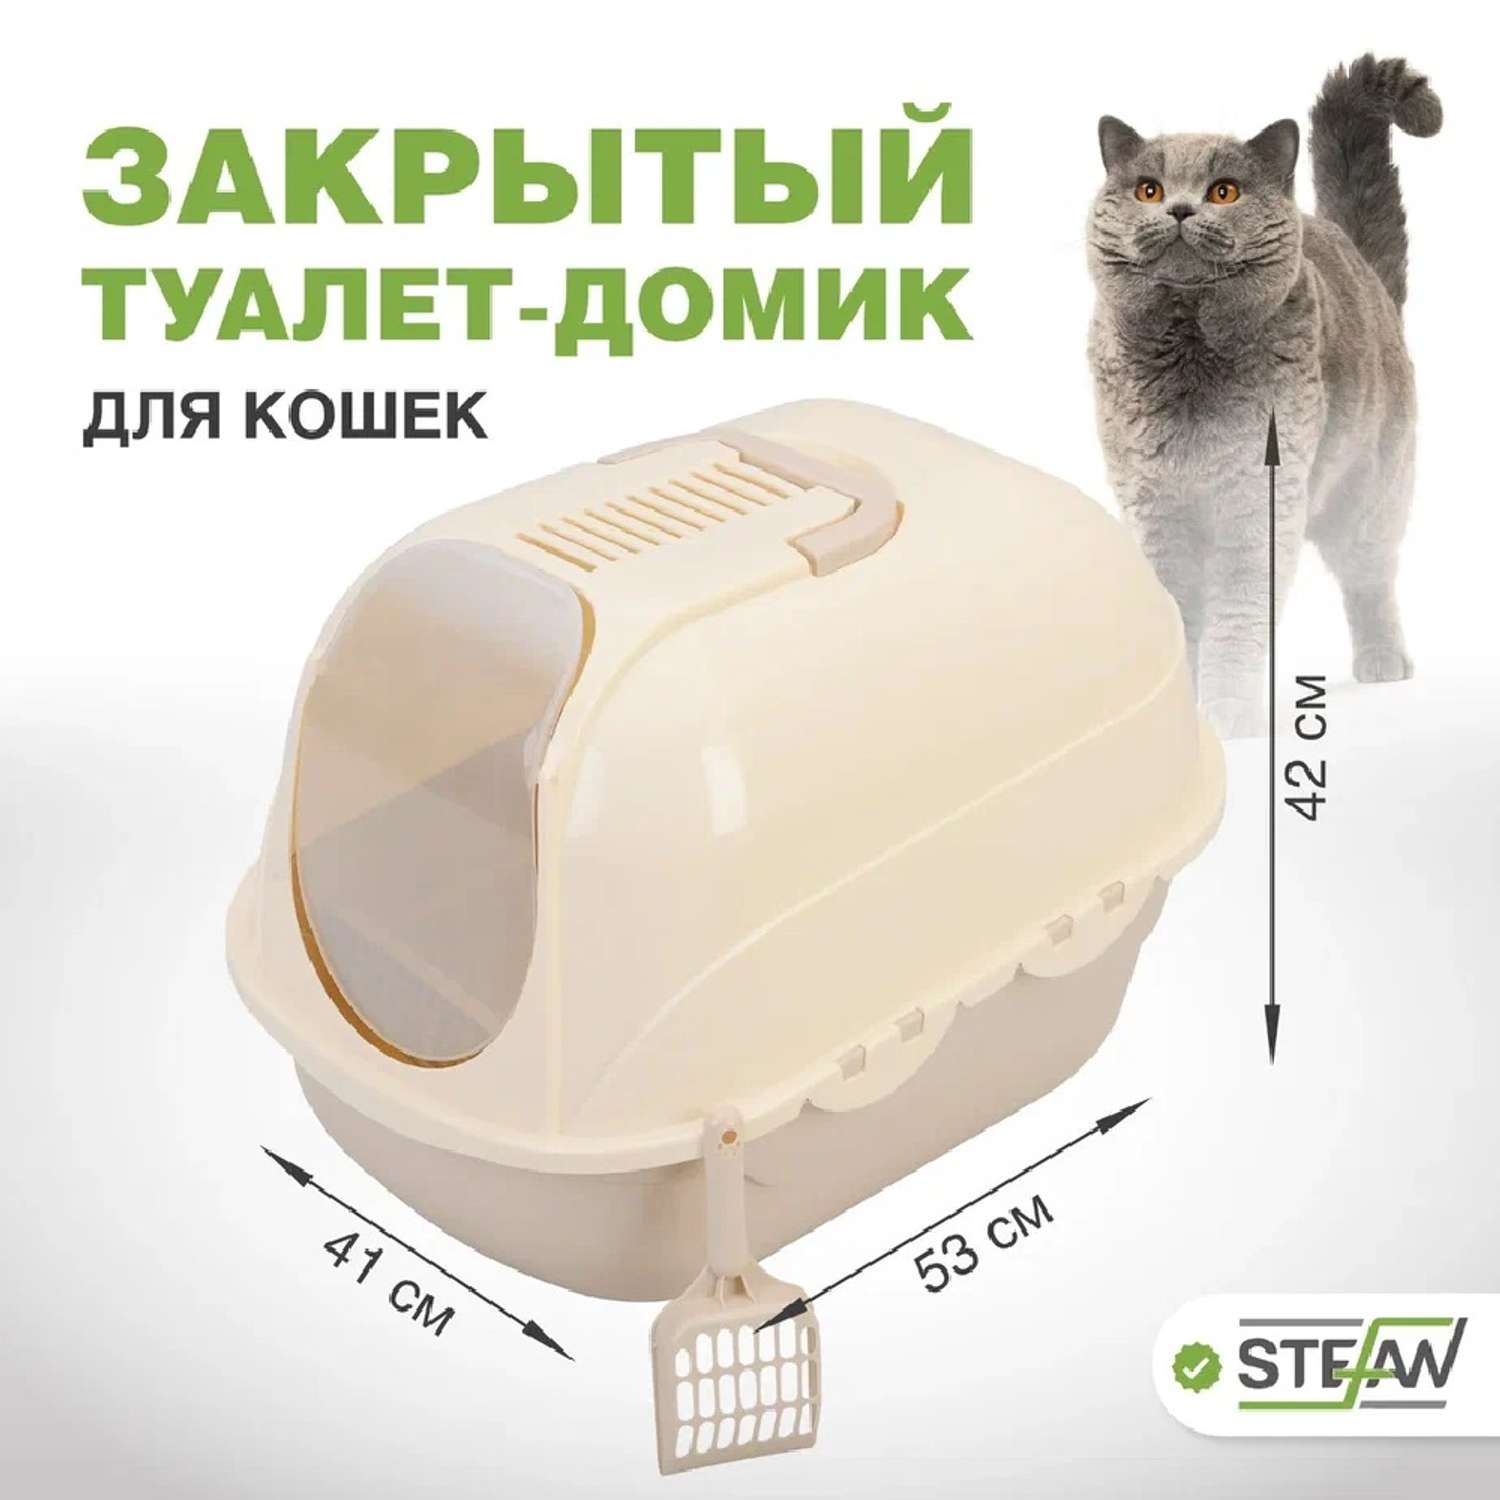 Как сделать туалет для кошки?